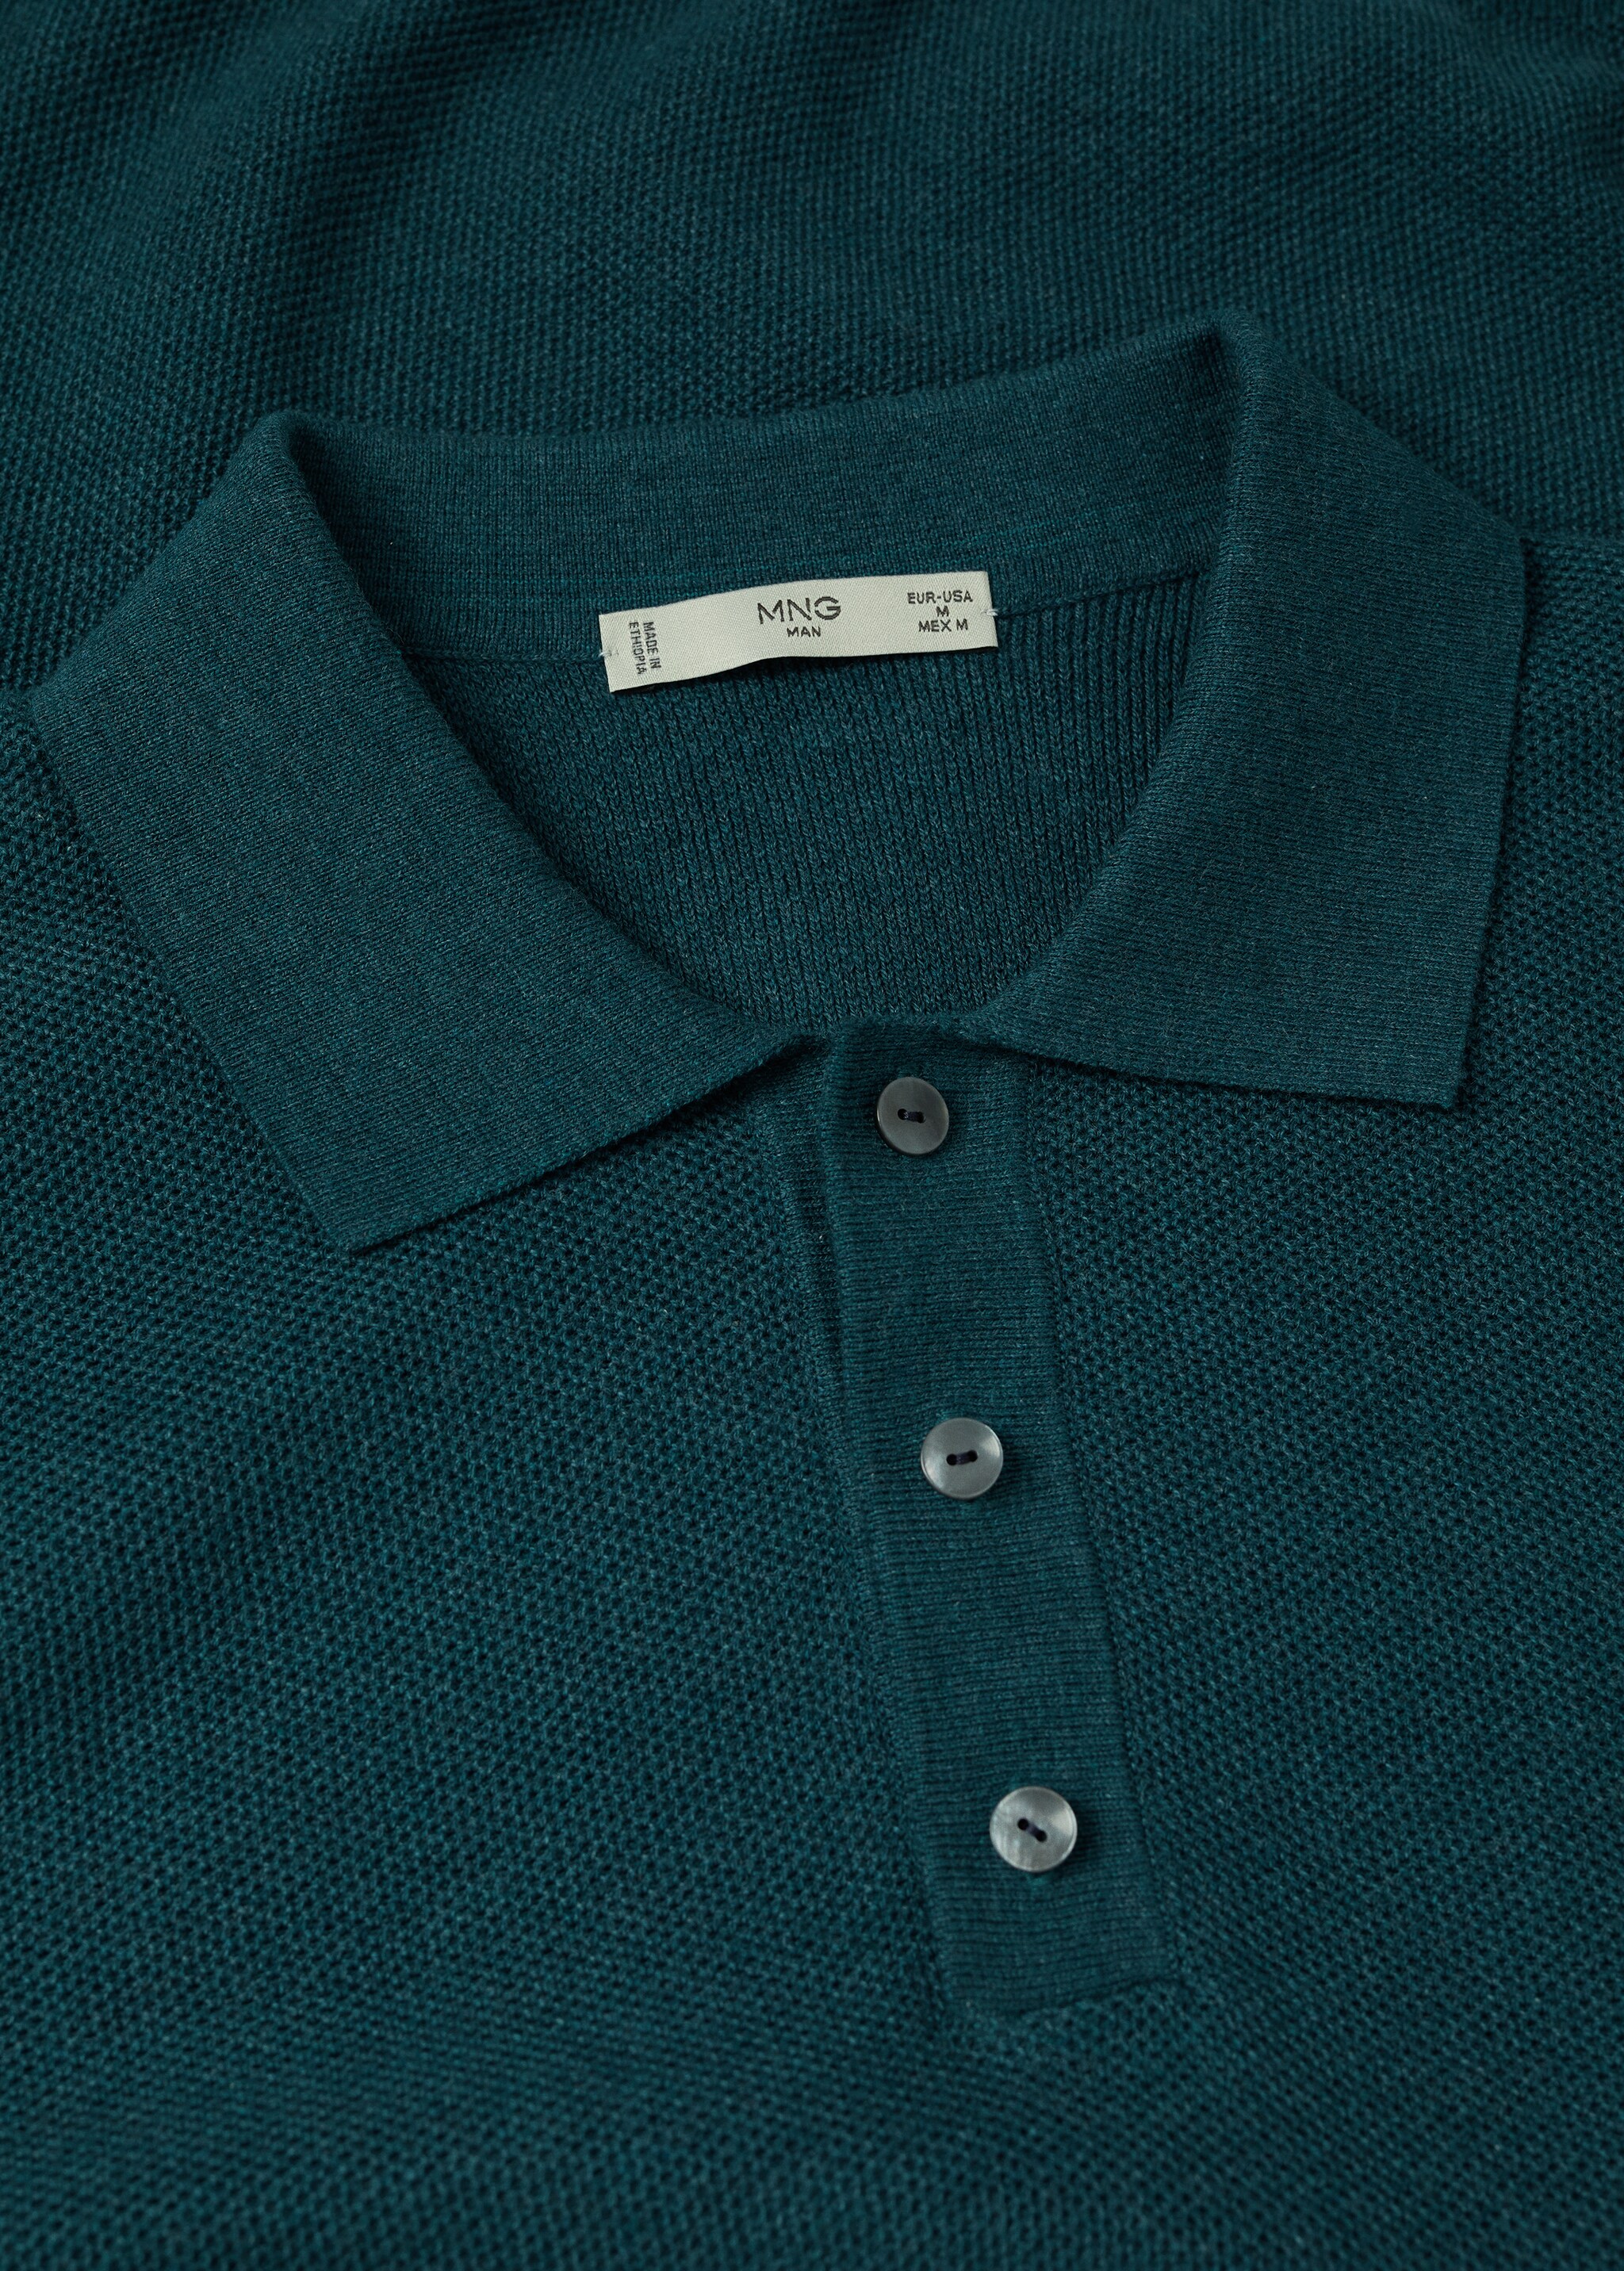 Strukturiertes Baumwoll-Poloshirt - Detail des Artikels 7